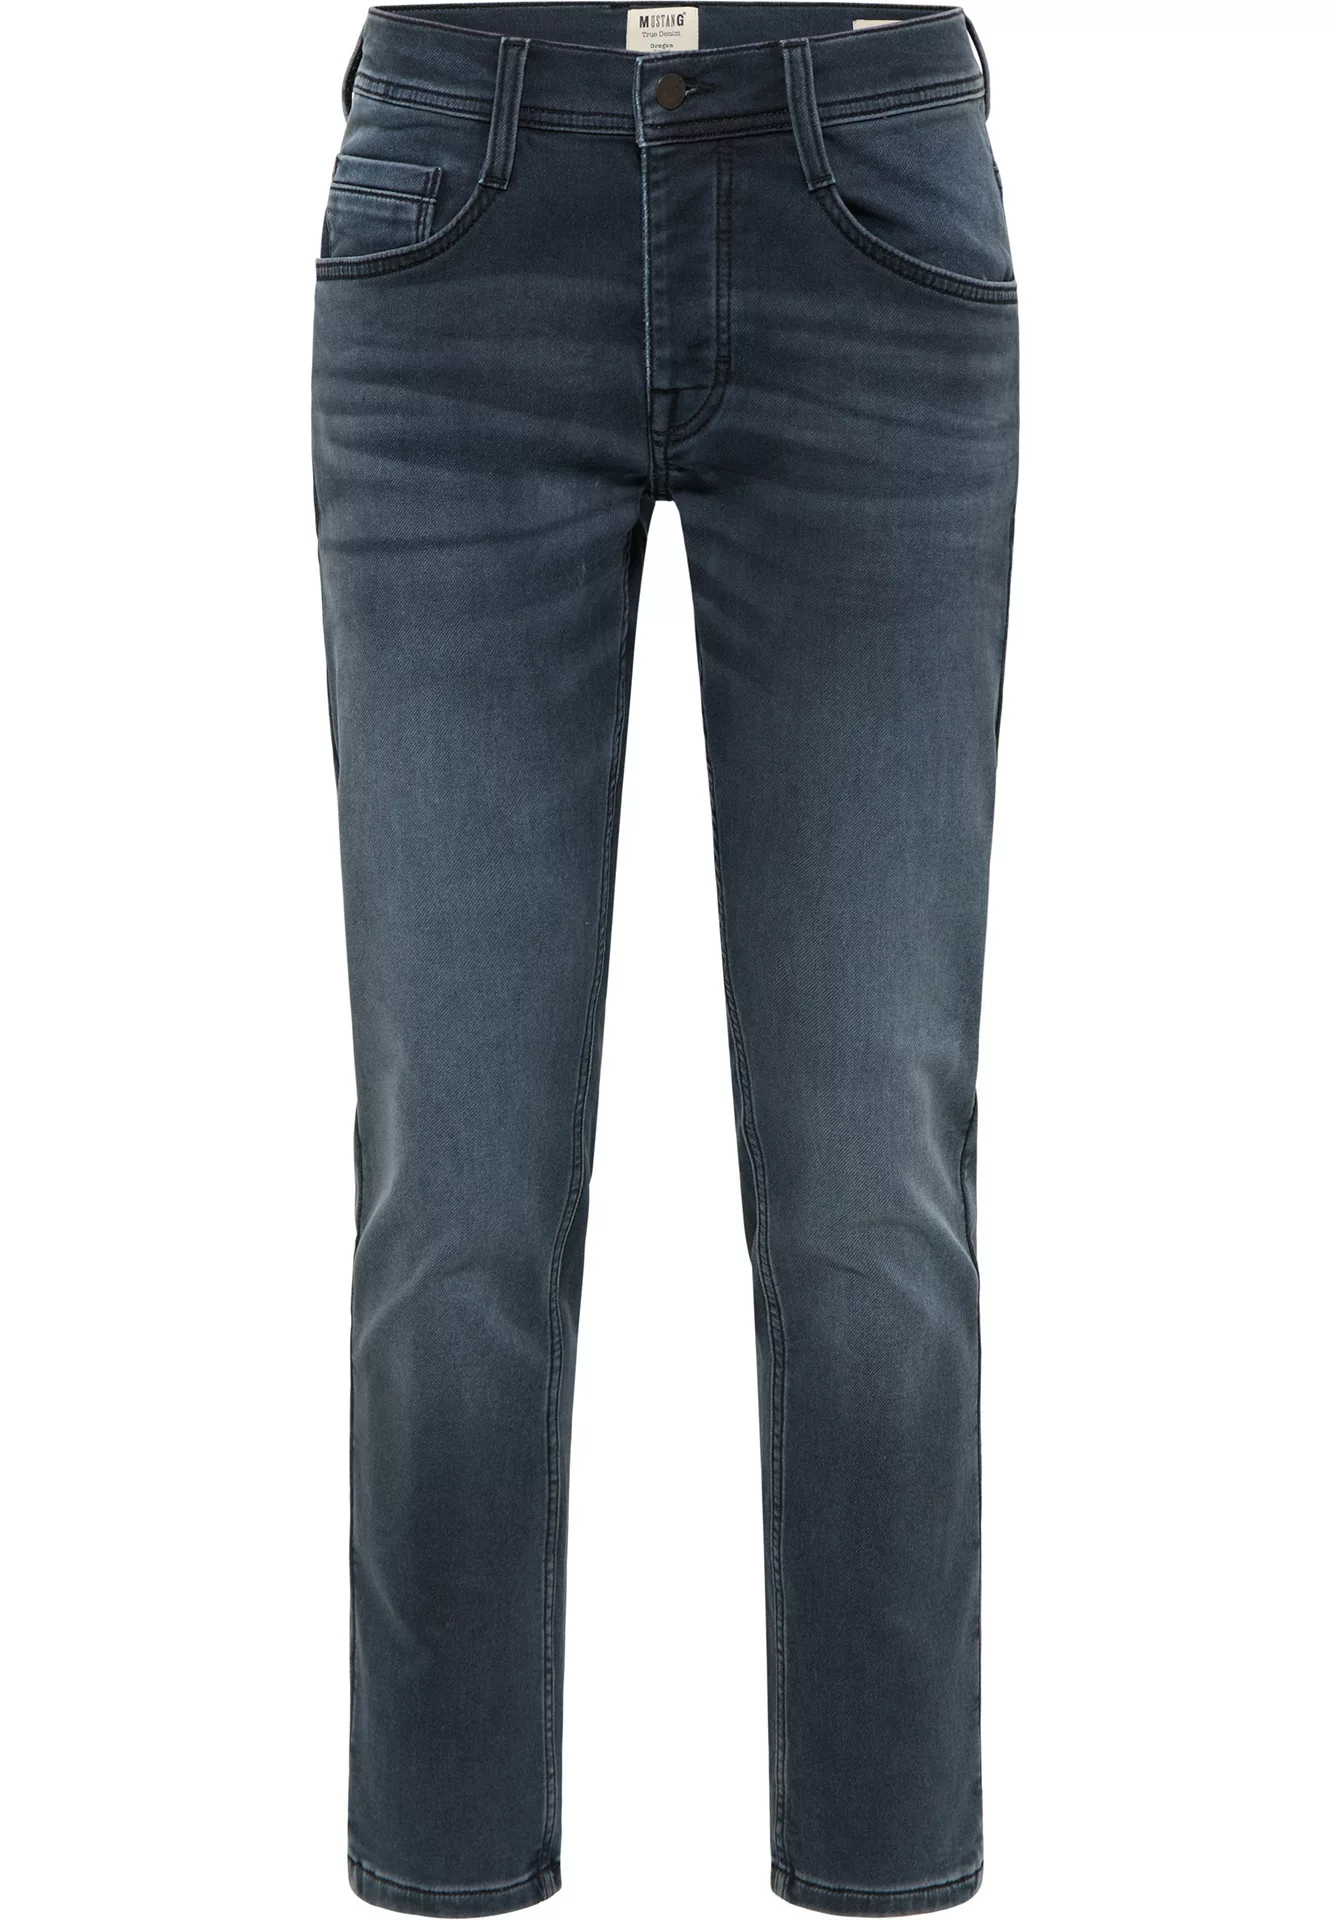 Mustang Oregon Tapered K Jeans Slim Fit denim blue extra lang günstig online kaufen